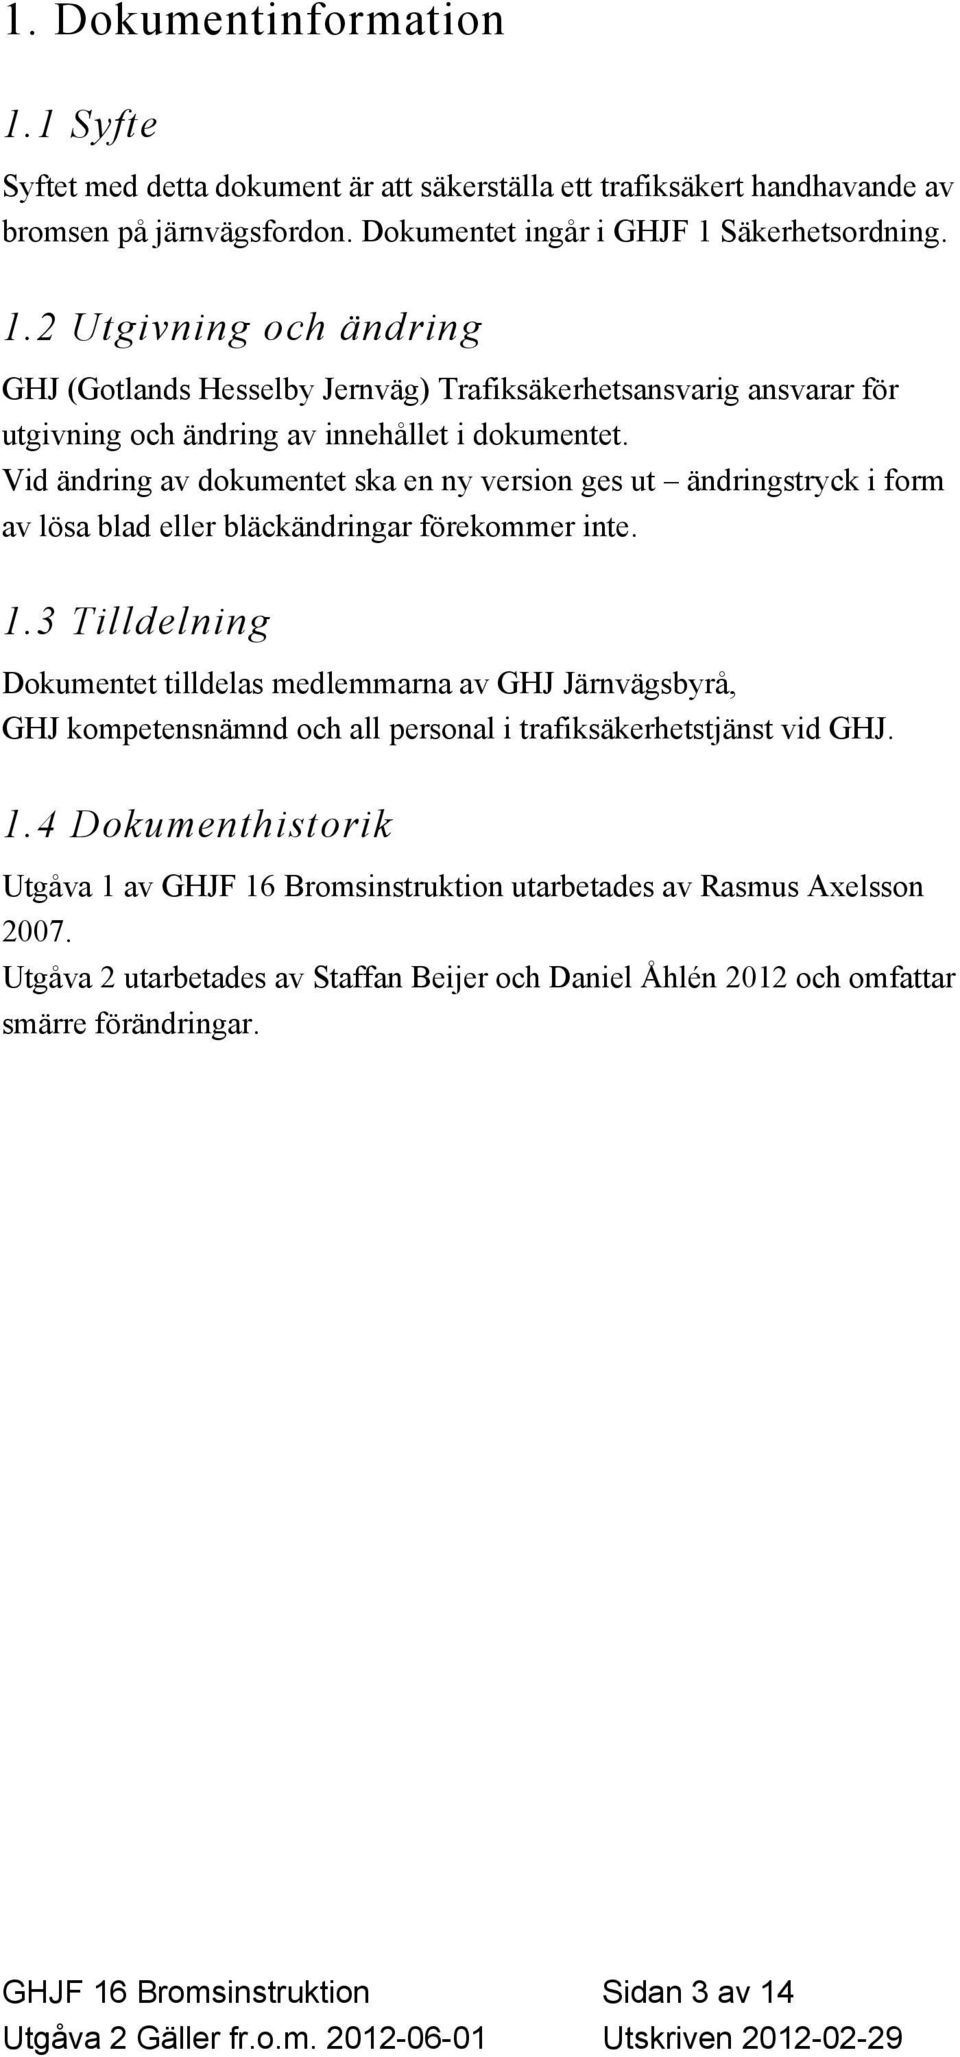 3 Tilldelning Dokumentet tilldelas medlemmarna av GHJ Järnvägsbyrå, GHJ kompetensnämnd och all personal i trafiksäkerhetstjänst vid GHJ. 1.